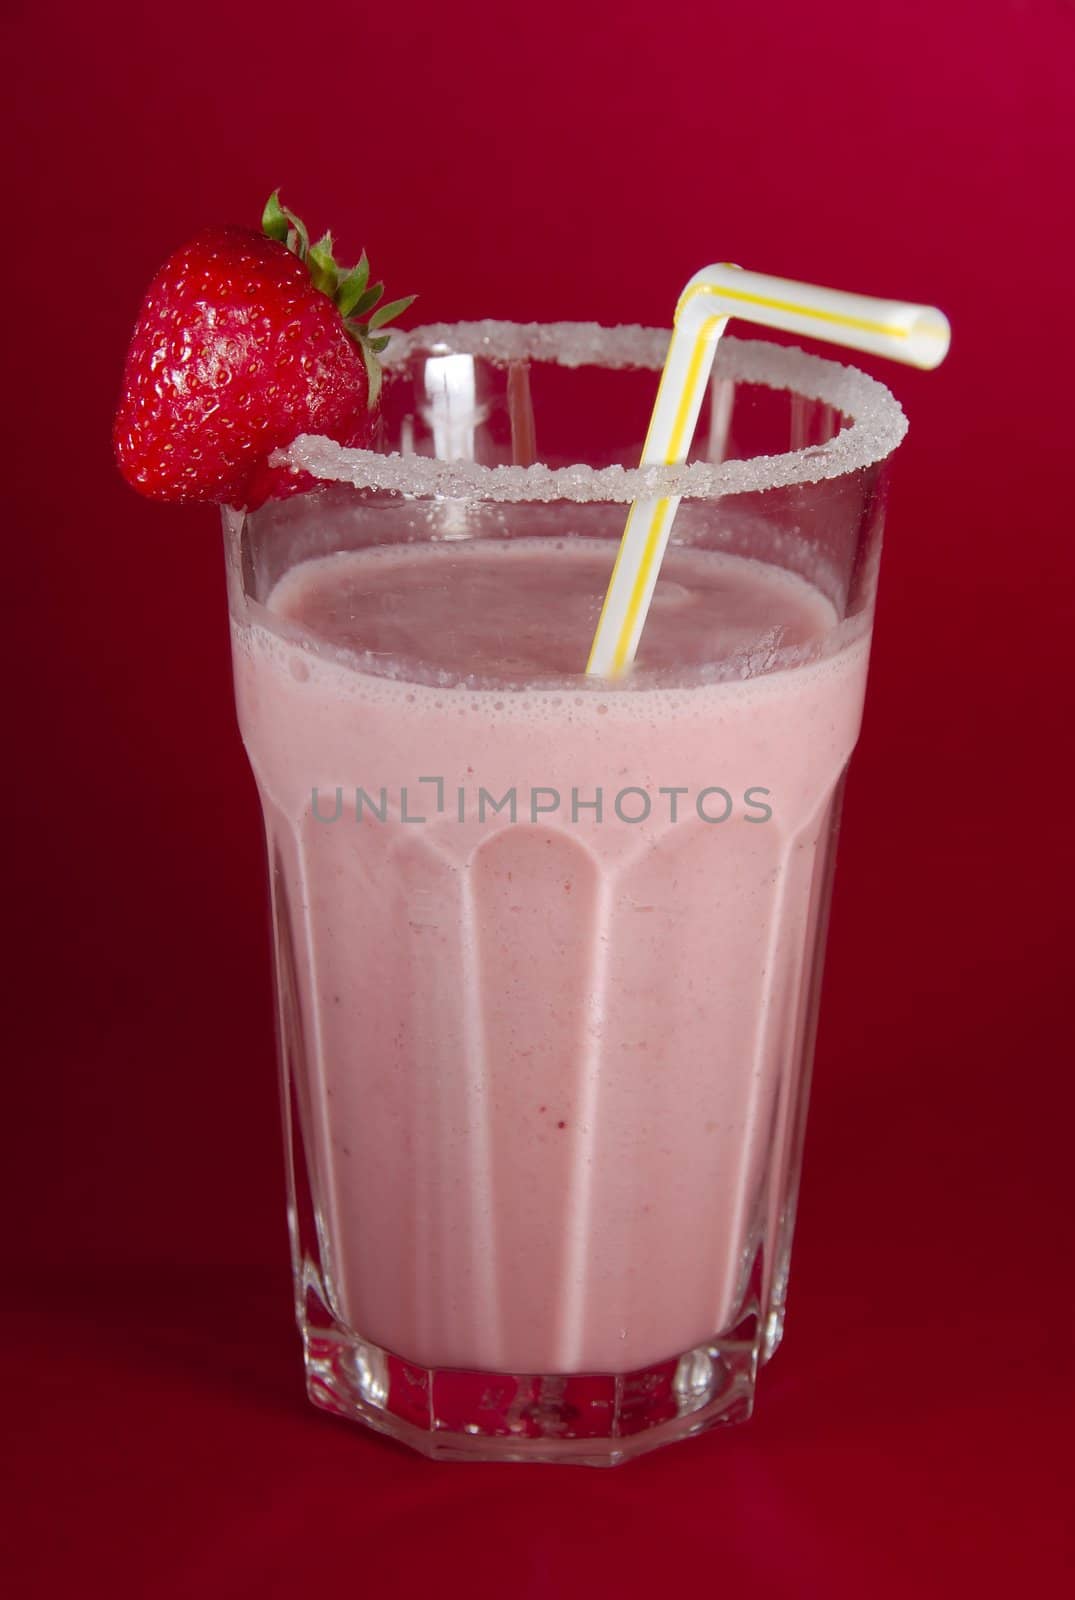 Strawberry milkshake by anki21